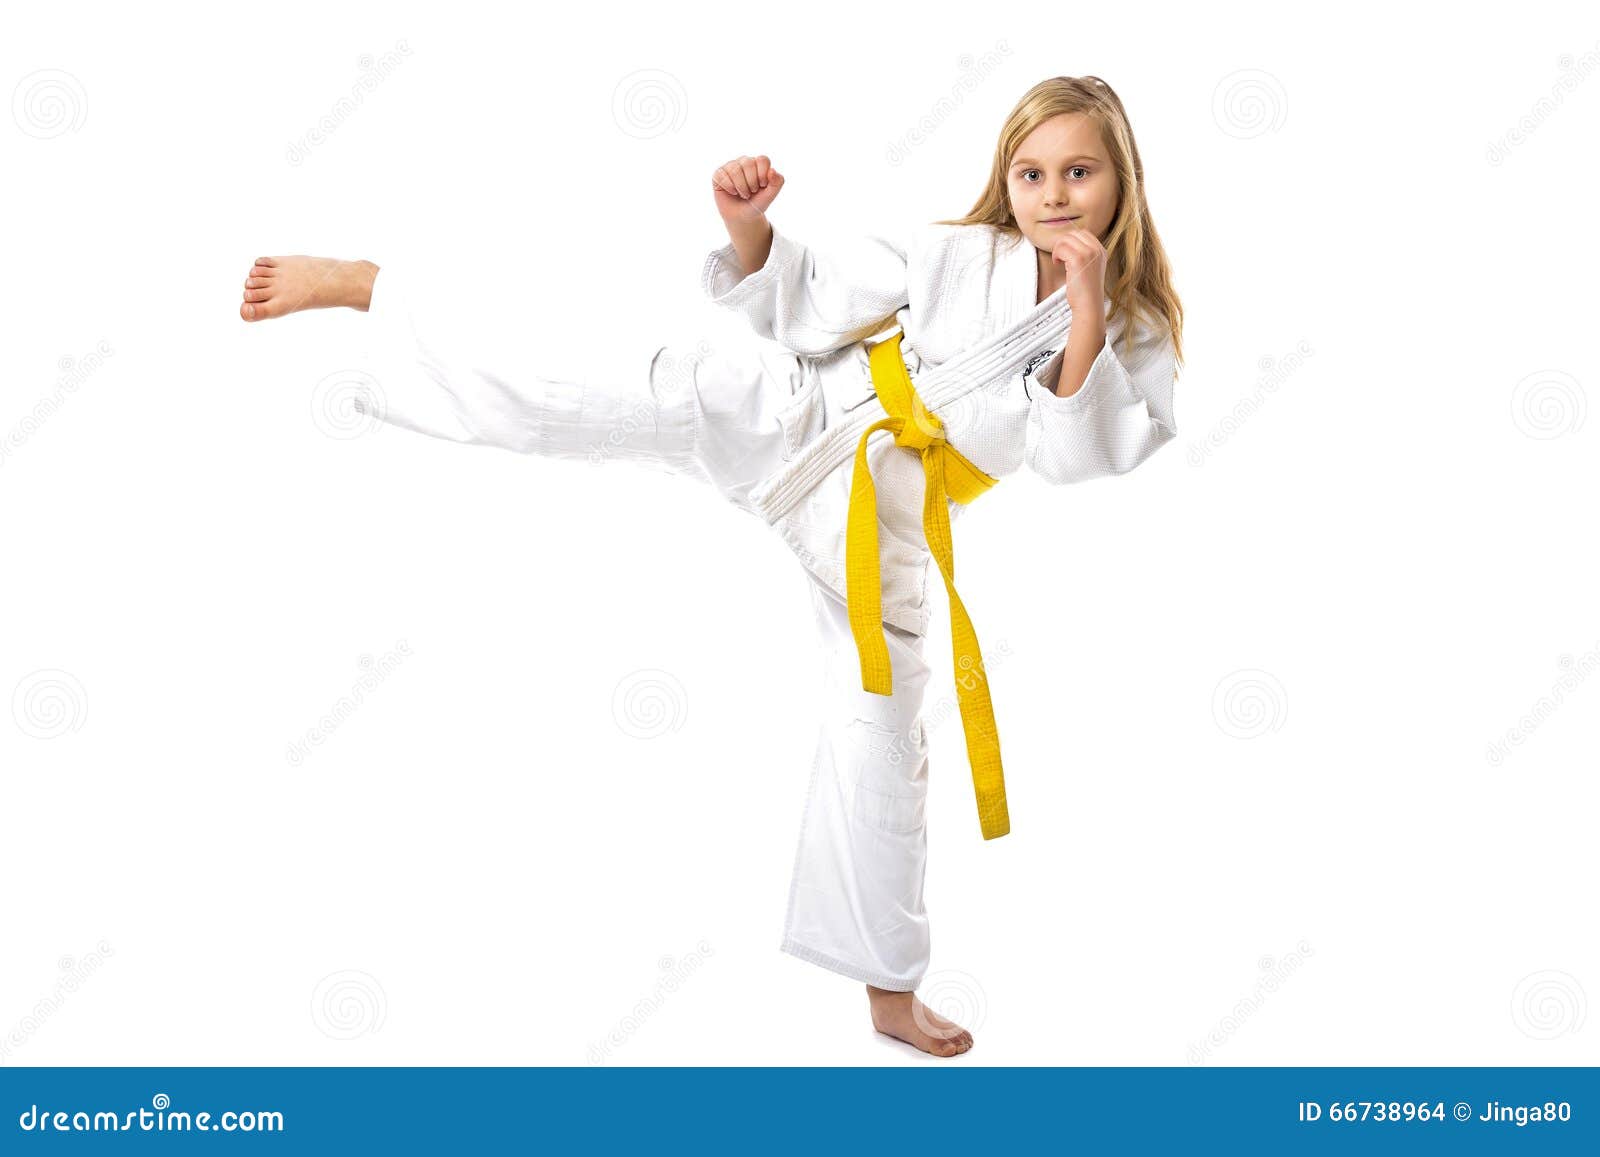 Я спешу на тренировку в кимоно сражаюсь. Каратэ девочки 12 лет. Каратэ дети девочек. Девочка каратист со спины. Девочке в Красном спортивном кимоно.